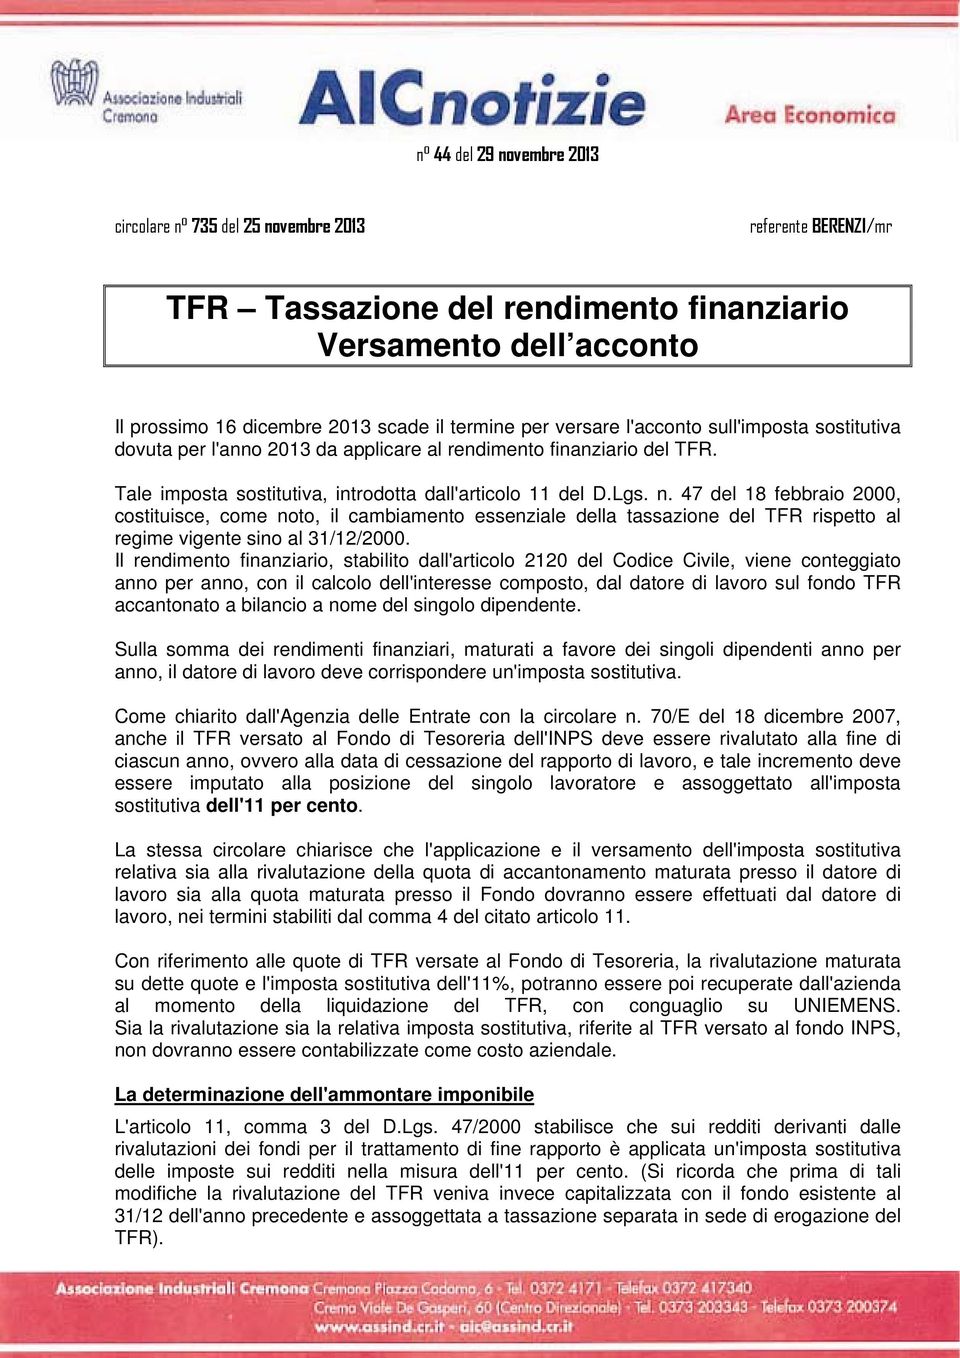 47 del 18 febbraio 2000, costituisce, come noto, il cambiamento essenziale della tassazione del TFR rispetto al regime vigente sino al 31/12/2000.